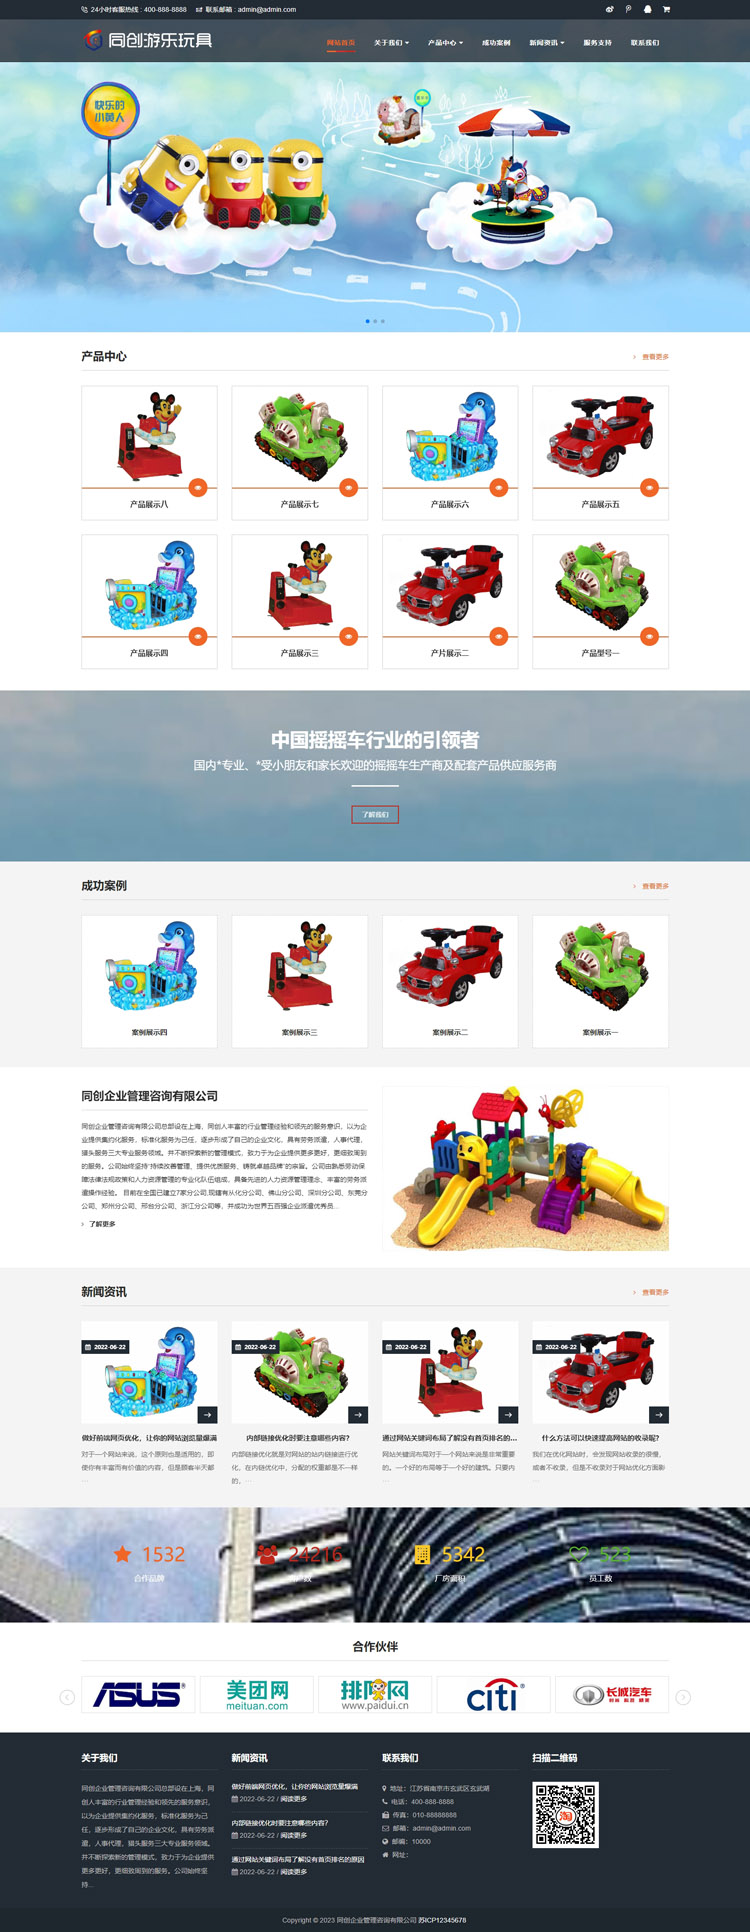 玩具游乐设施网站源码程序-XX003-2